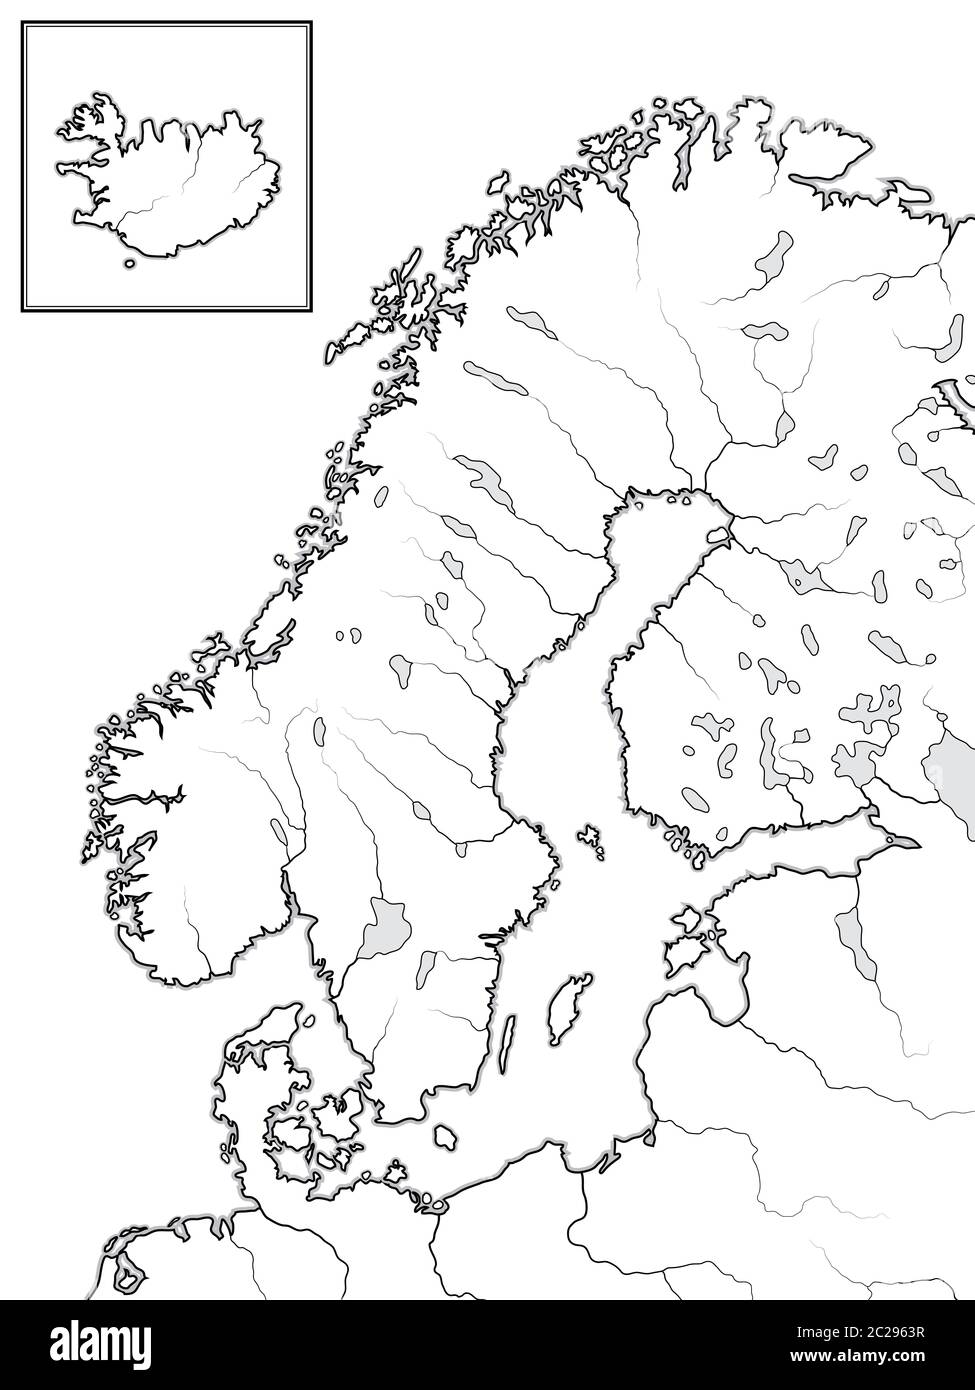 Karte der SKANDINAVISCHEN Länder: Skandinavien, Schweden, Norwegen, Finnland, Dänemark & Island. Geografische Karte. Stockfoto